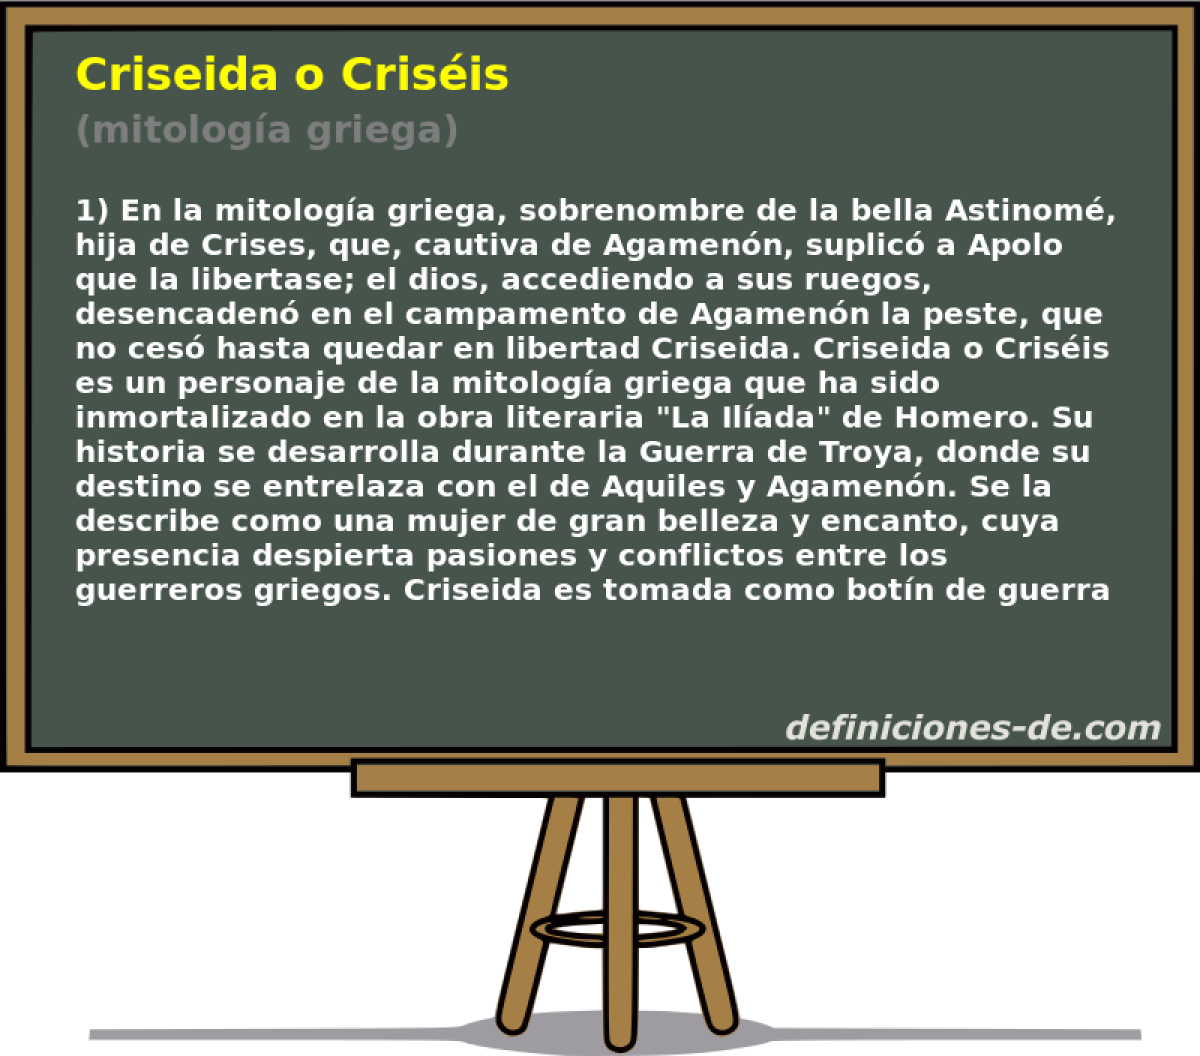 Criseida o Crisis (mitologa griega)